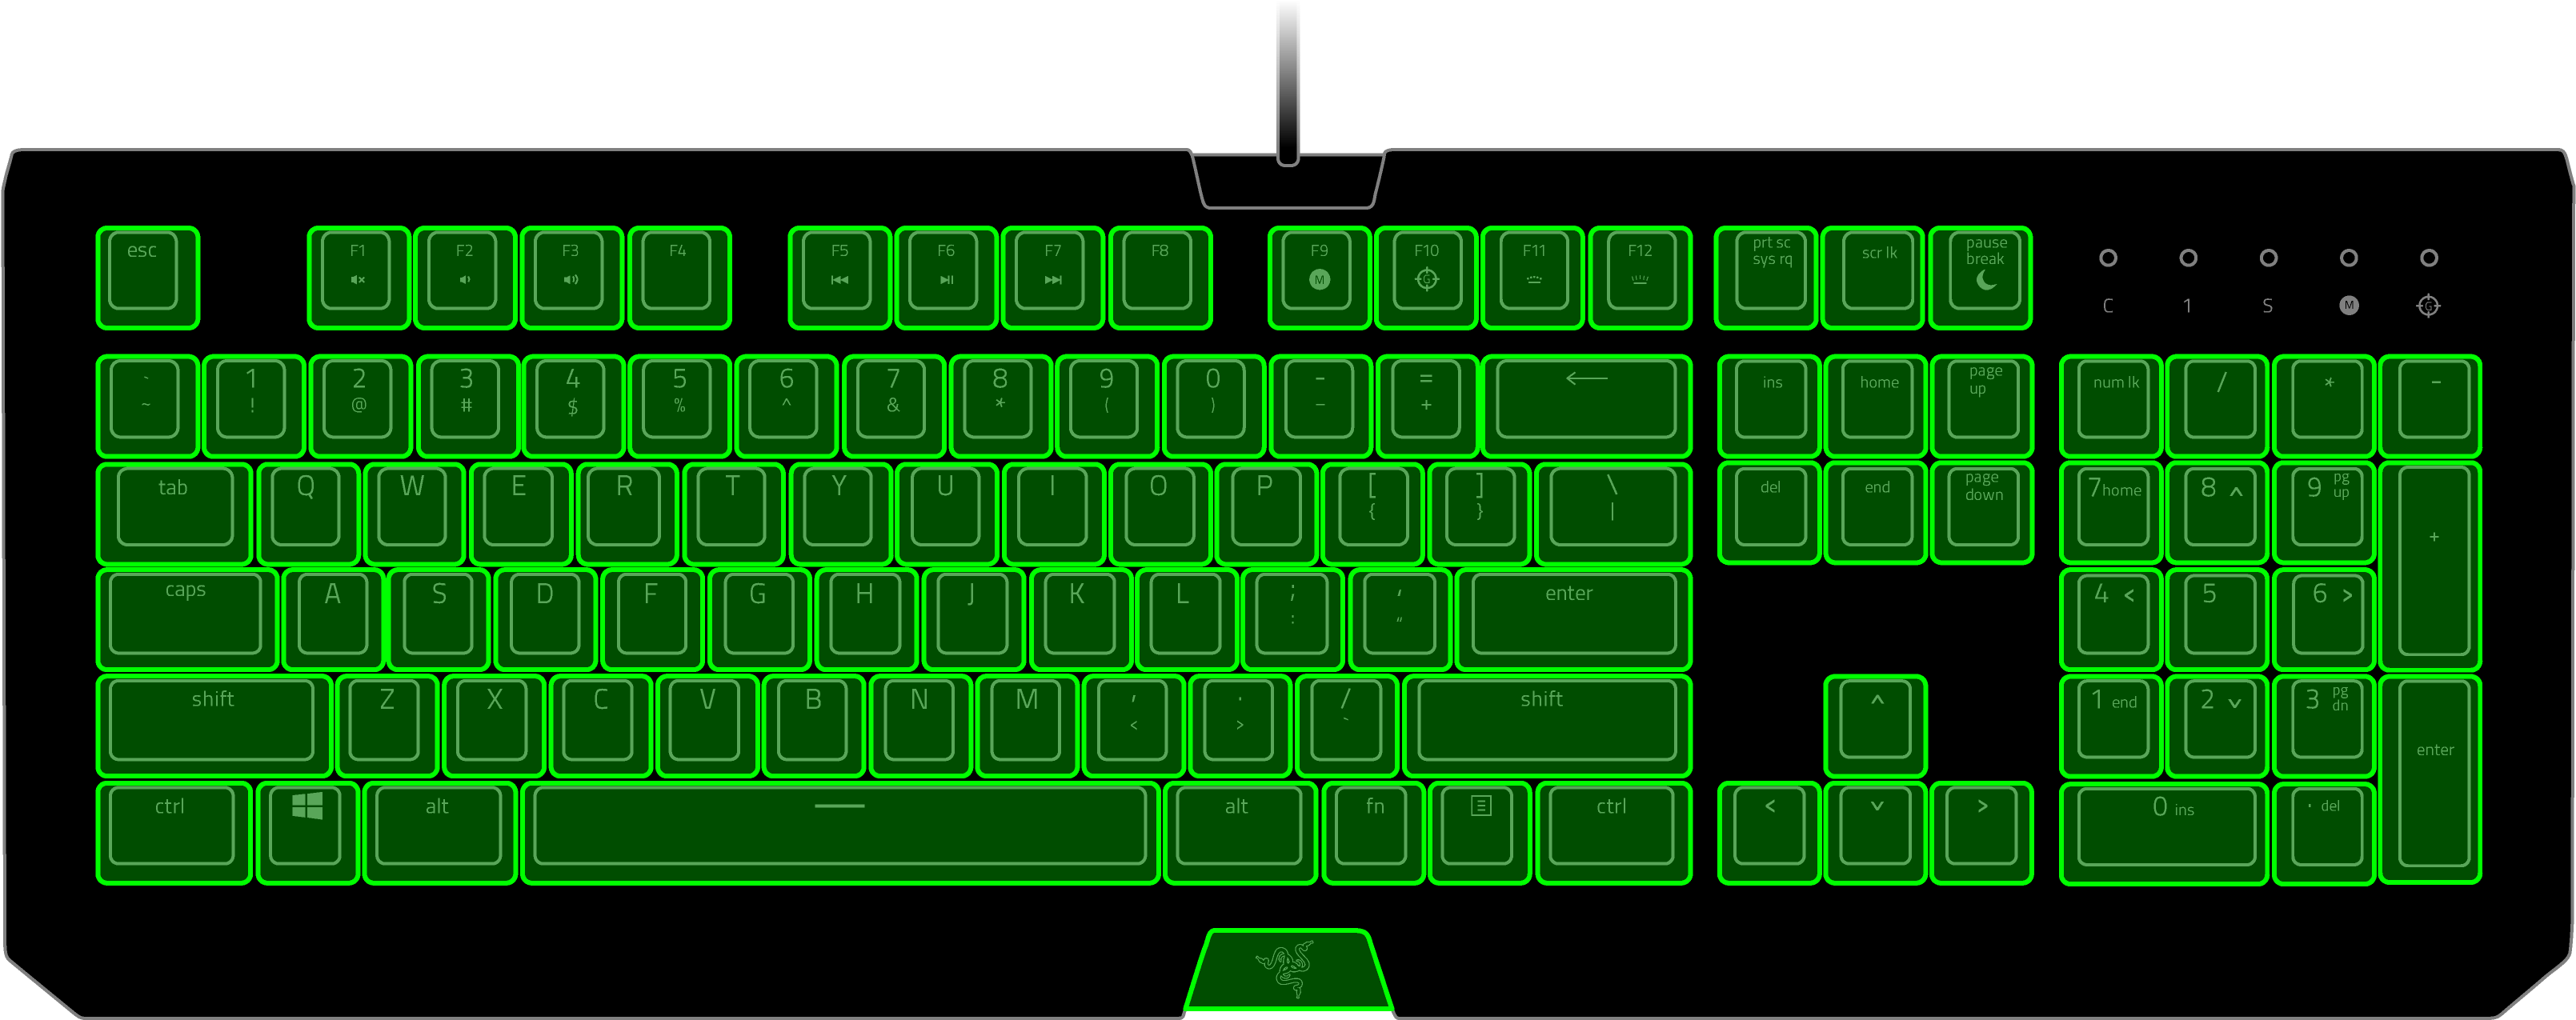 keyboard clipart desktop keyboard